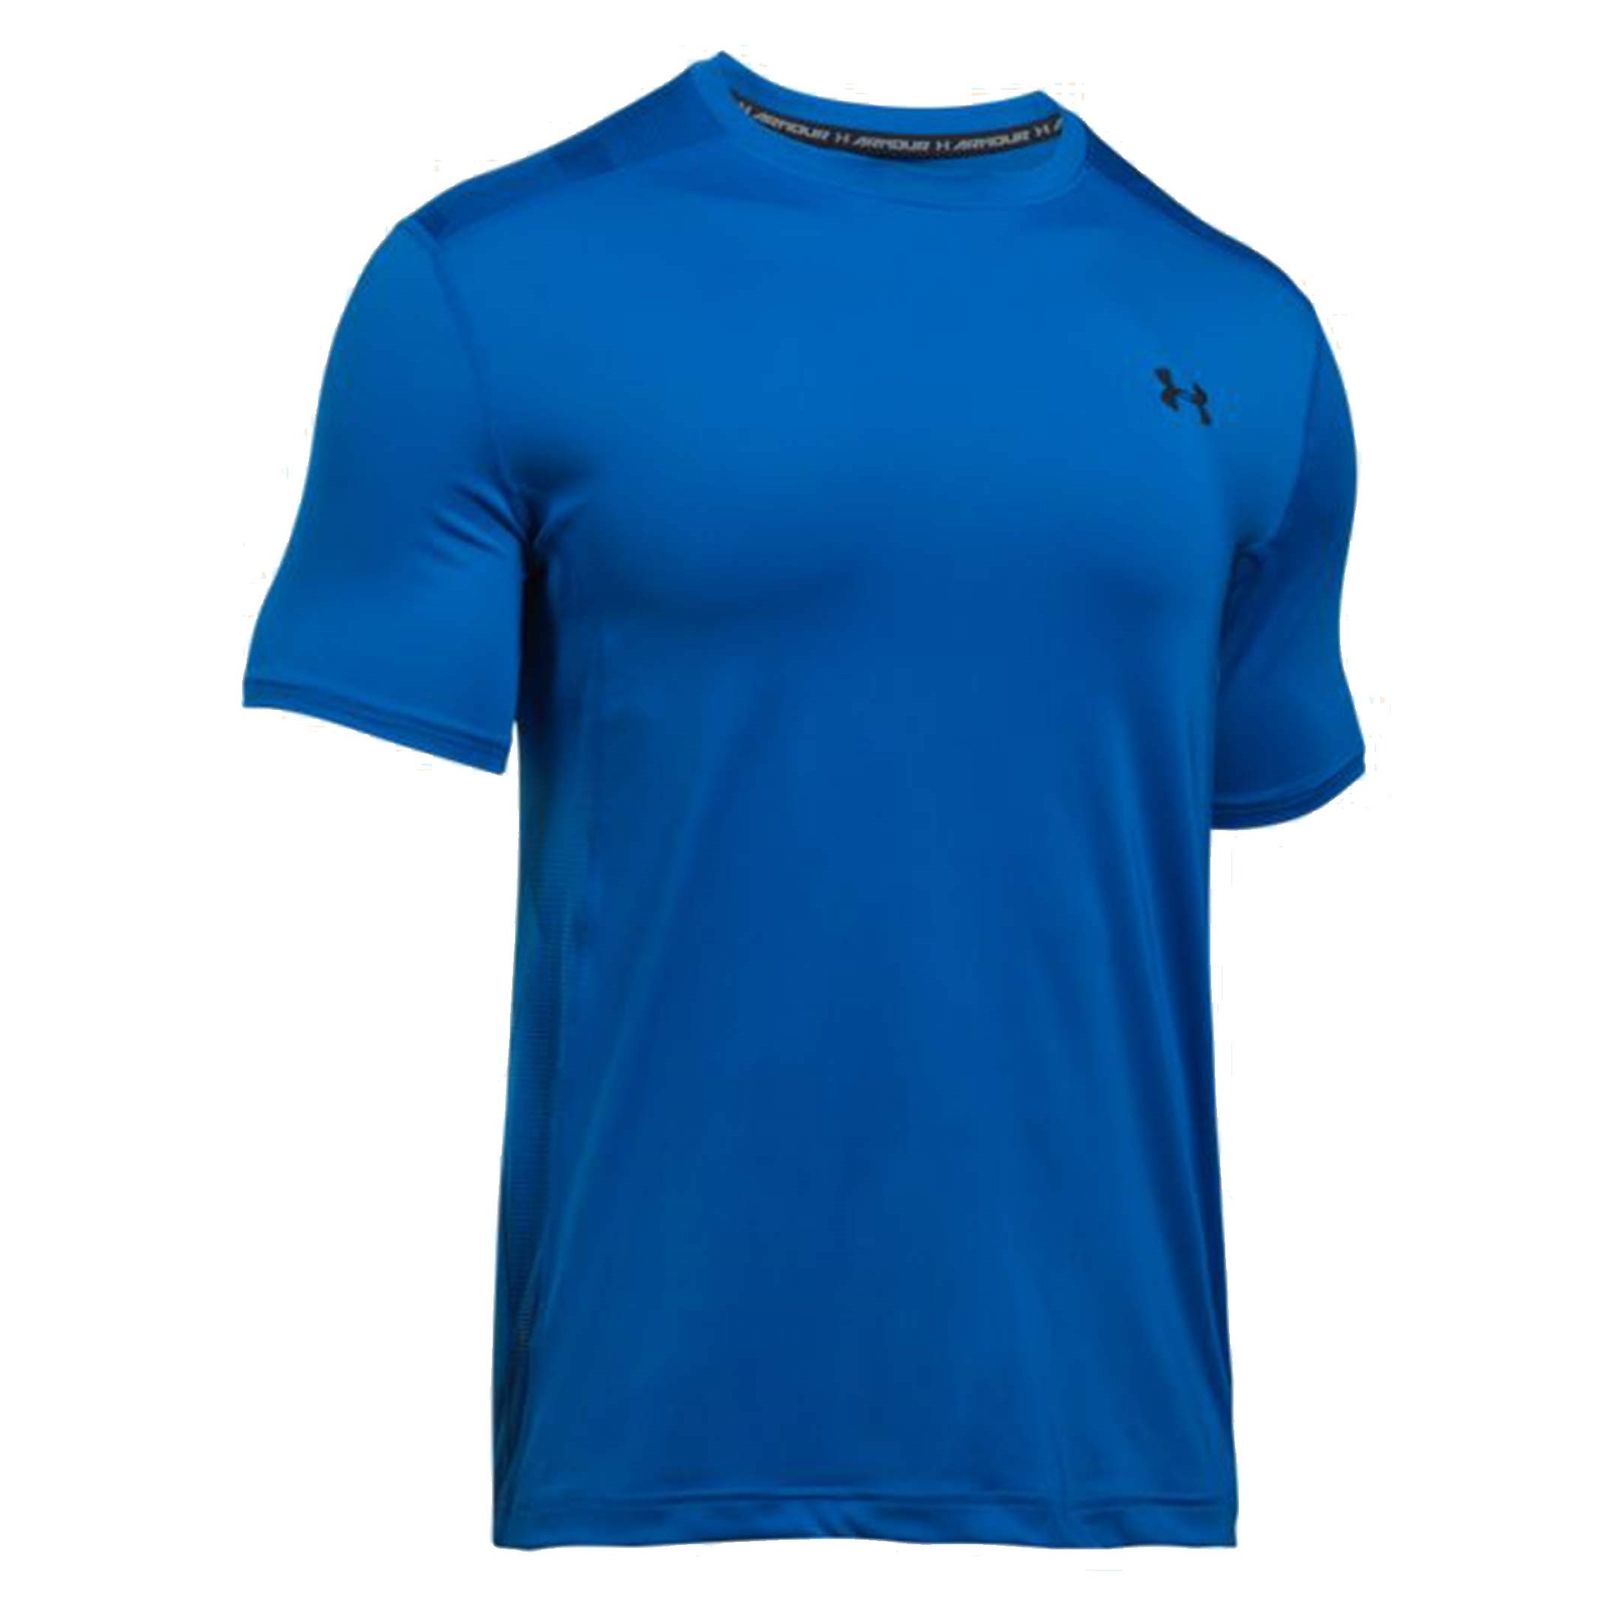 تی شرت ورزشی یقه گرد مردانه - آندر آرمور - آبي - 1